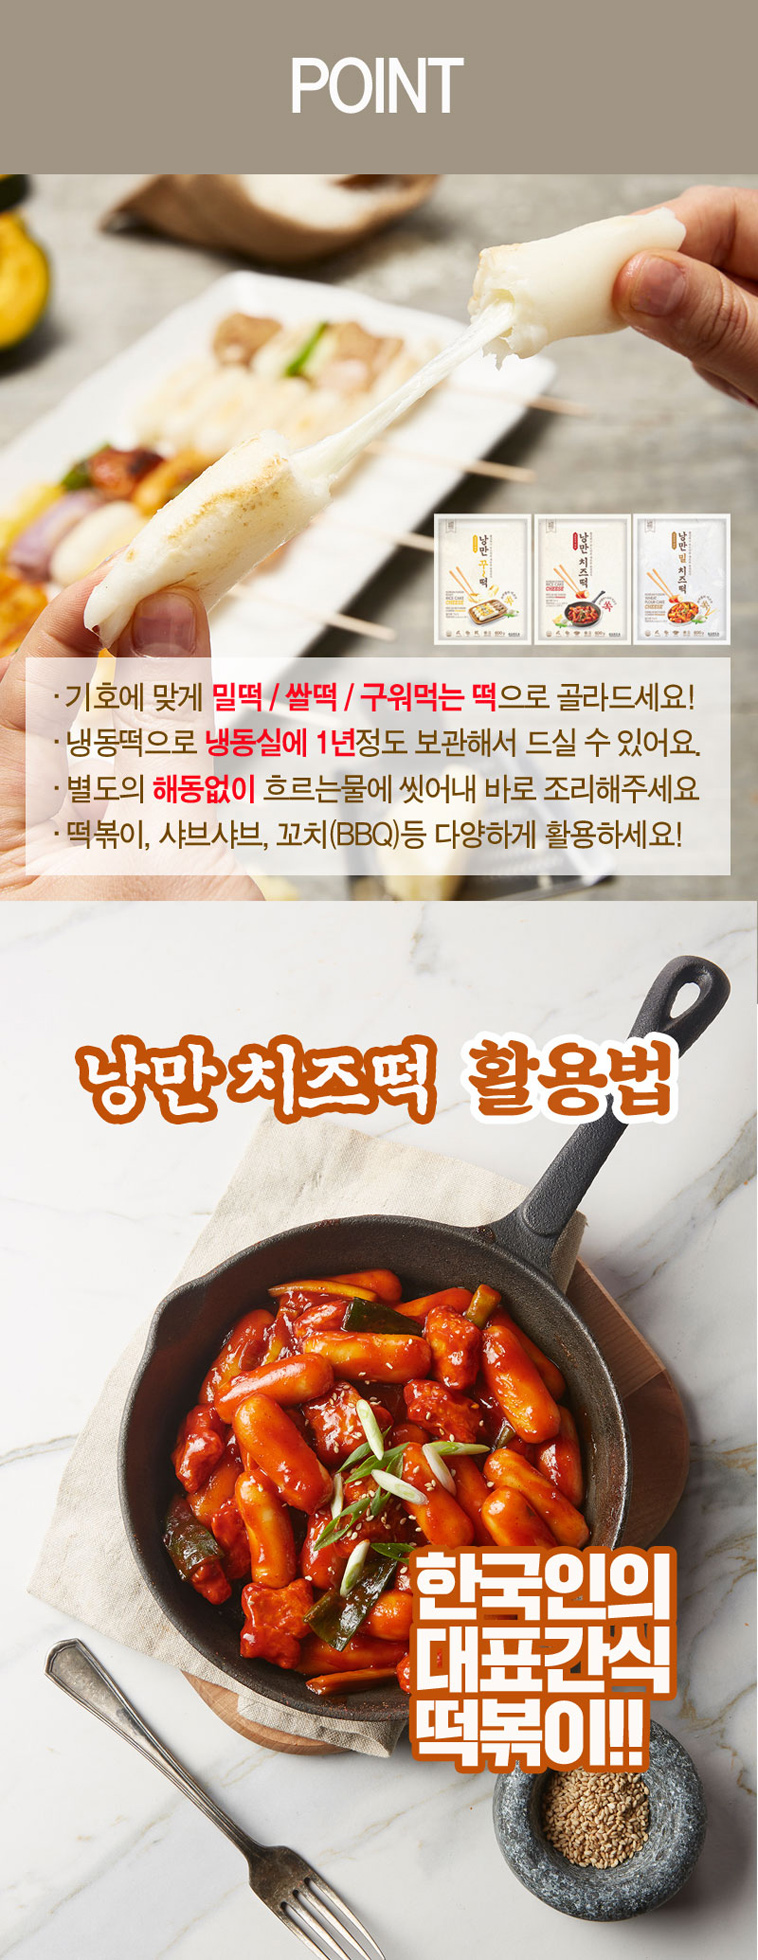 Korean Fusion Wheat Flour Cake with Cheese 21.16oz(600g)